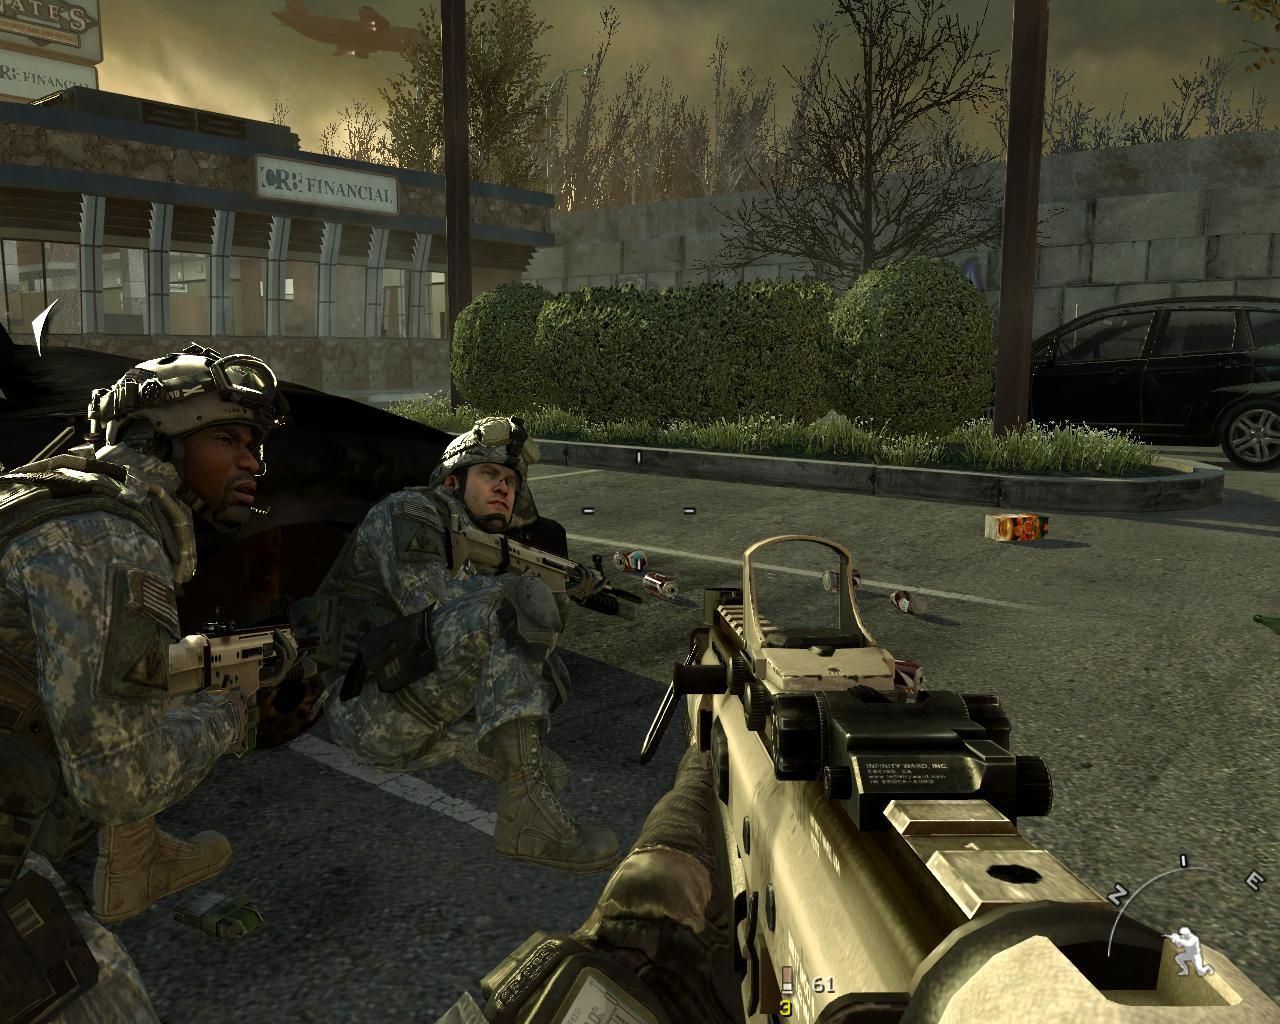 Игры кал оф дьюти модерн варфаре. Modern Warfare 2 2009. Call of Duty:2 Модерн варфаер 2009. Call of Duty 4 Modern Warfare. Call 0f Duty Modern Warfare 1.